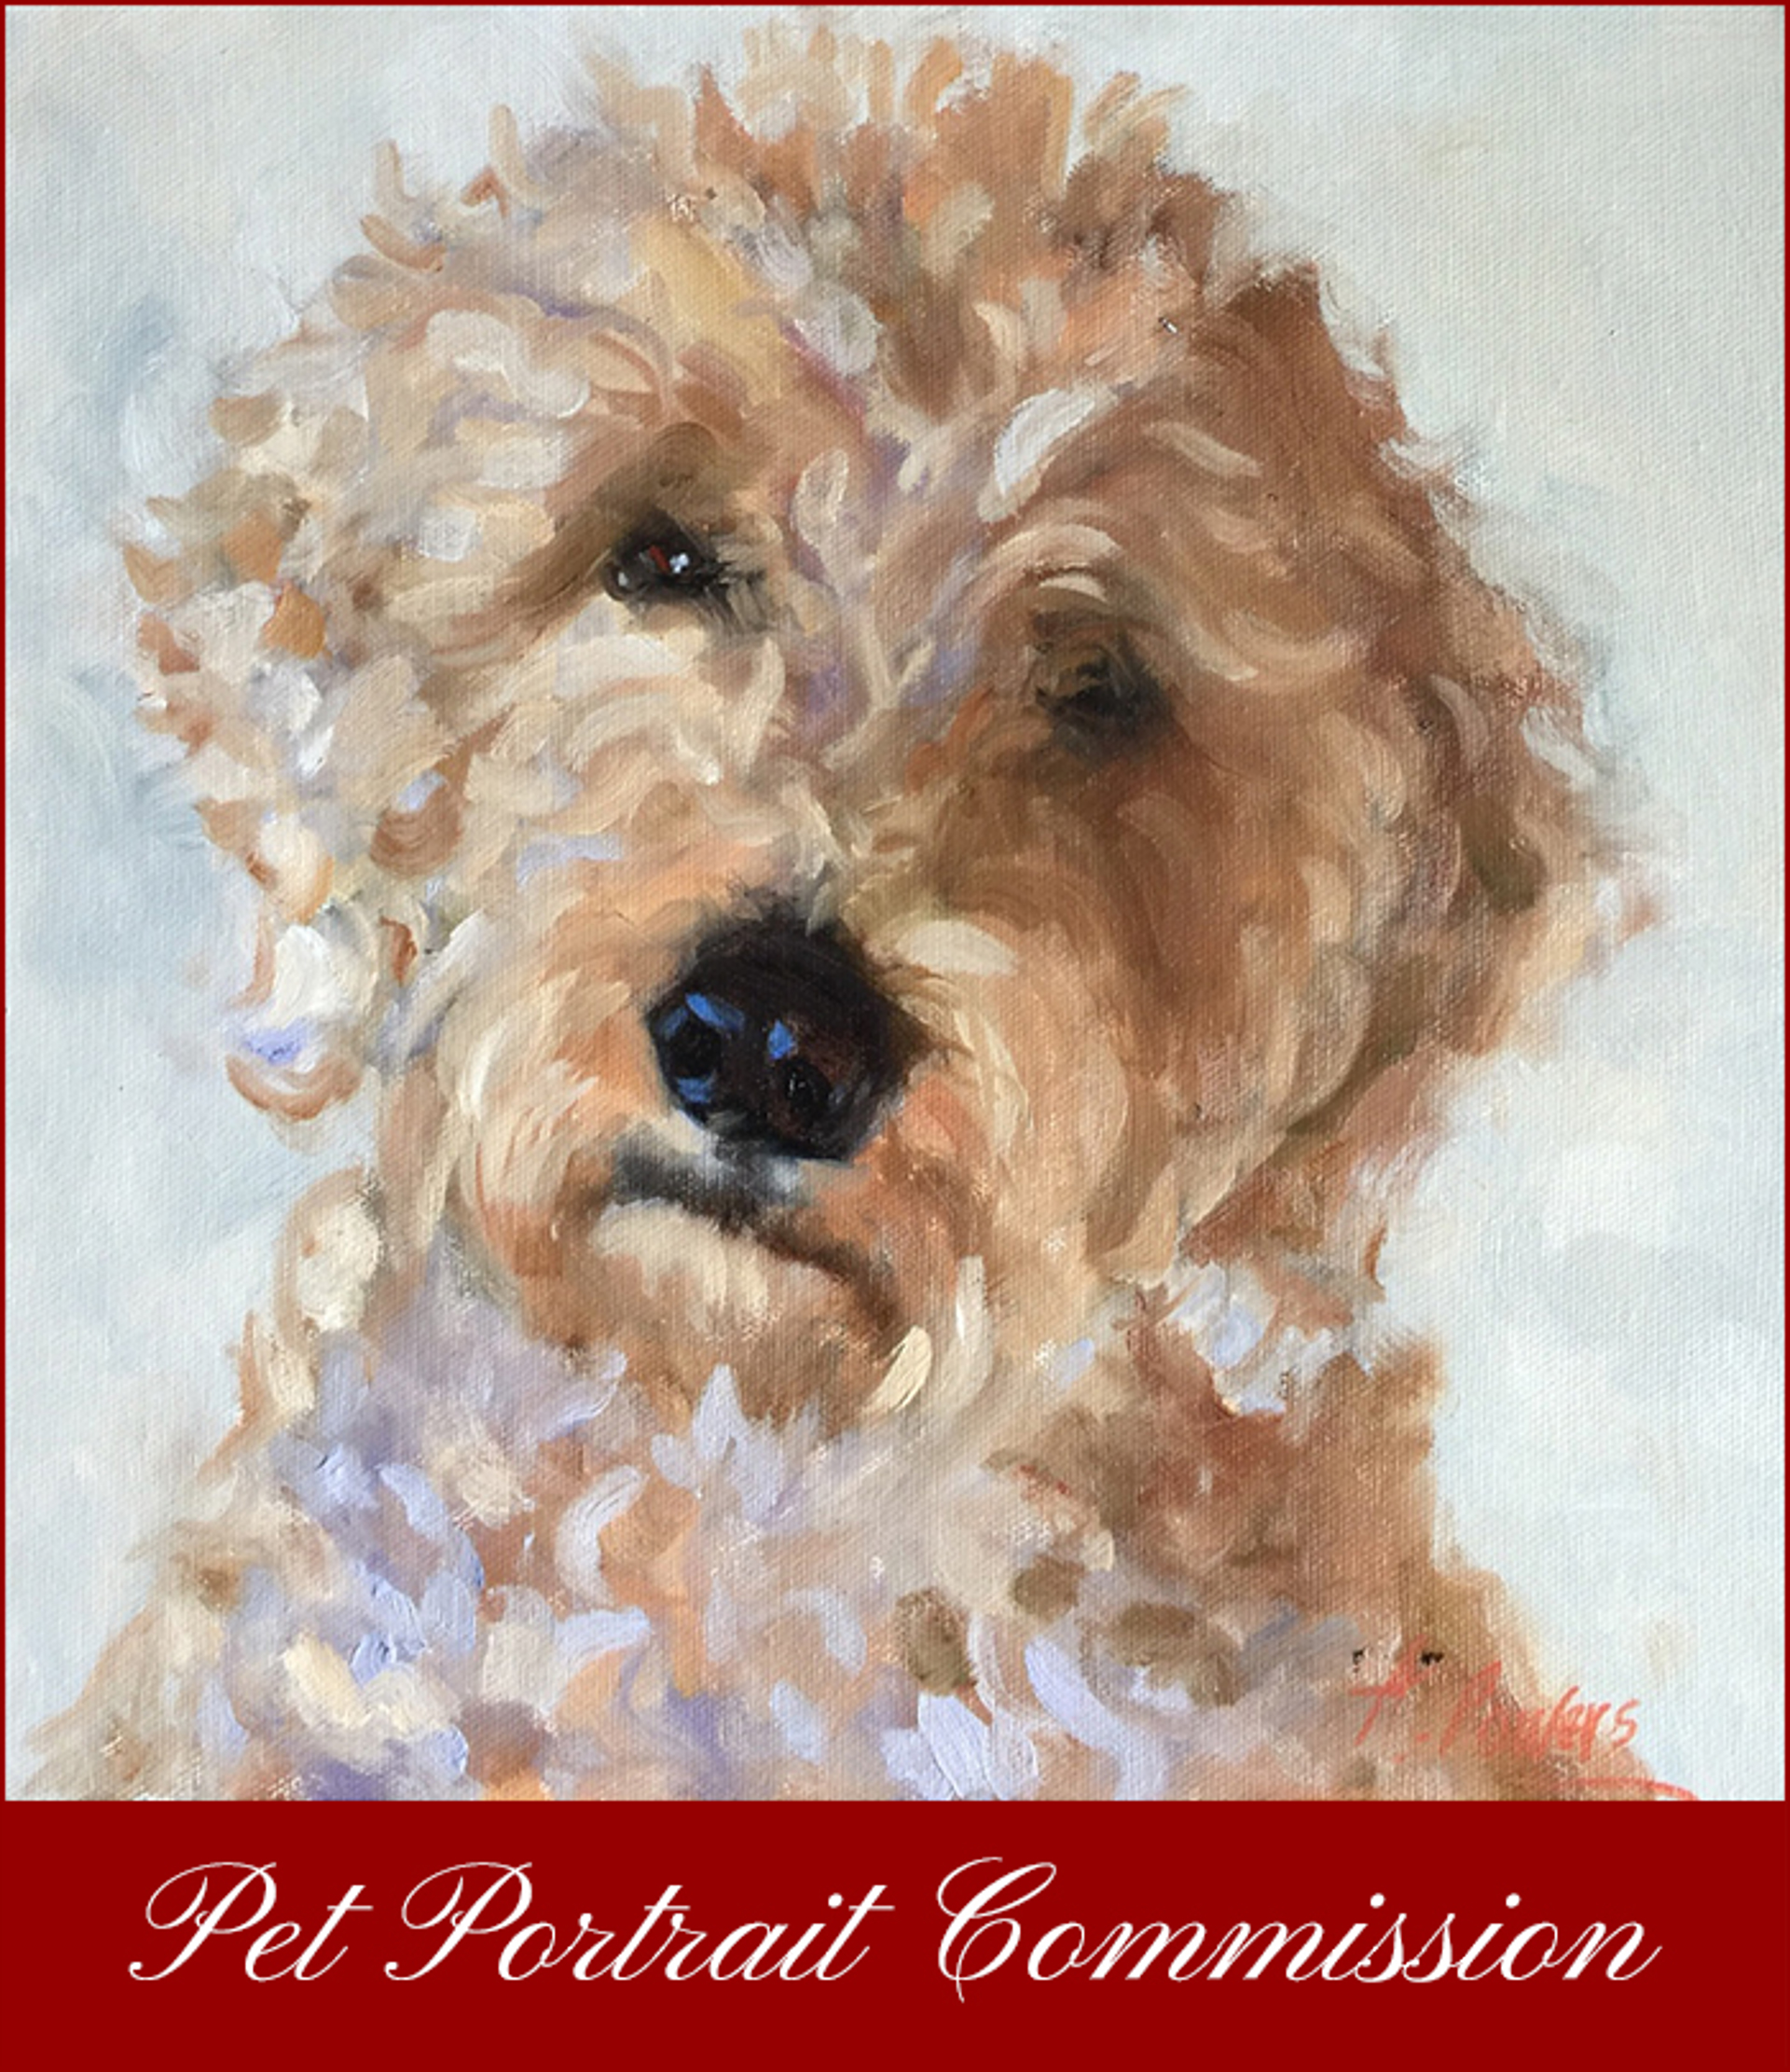 Pet Portrait Commission by Angela Powers